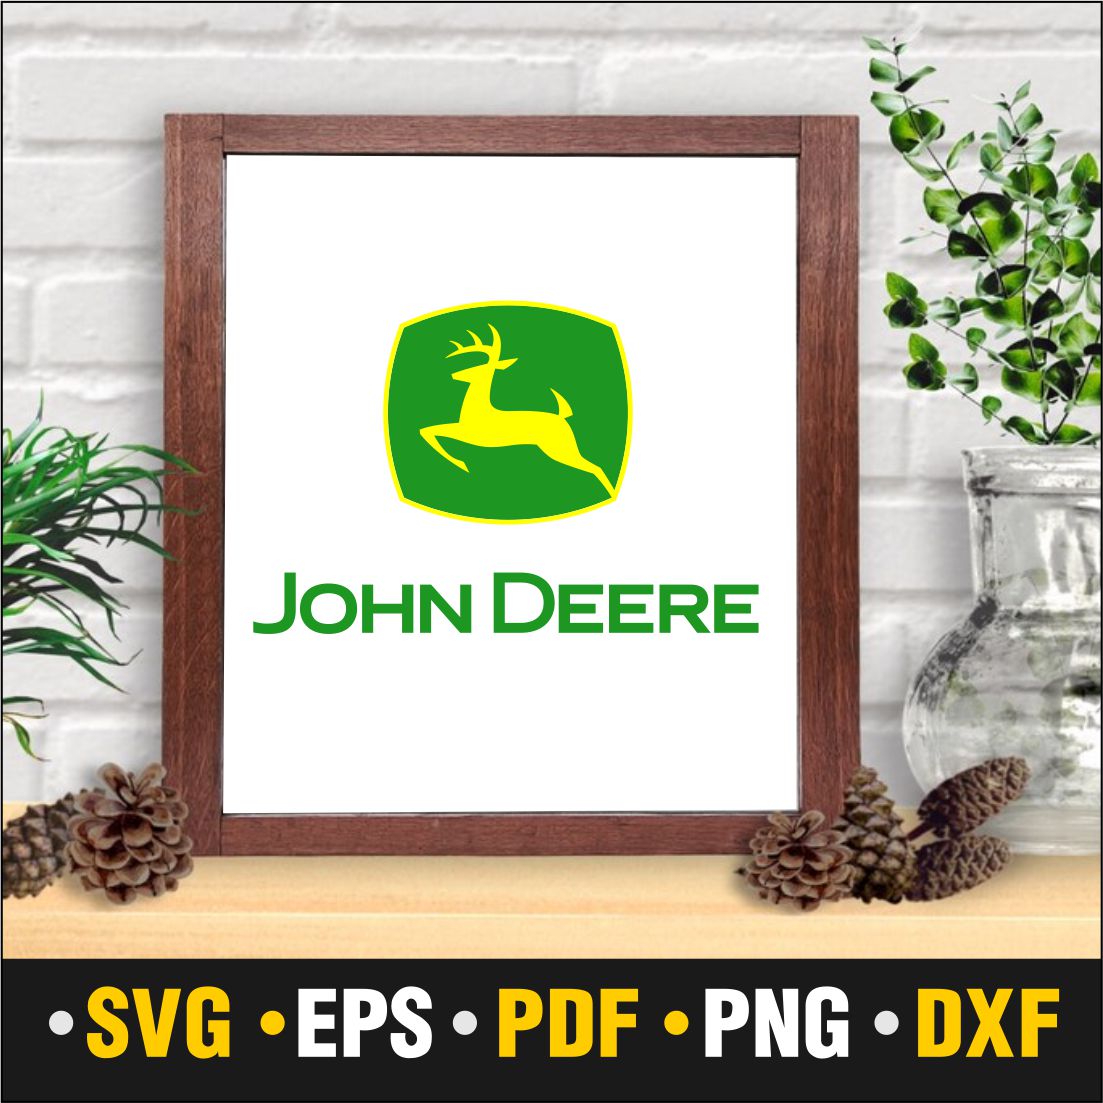 john deere logo outline